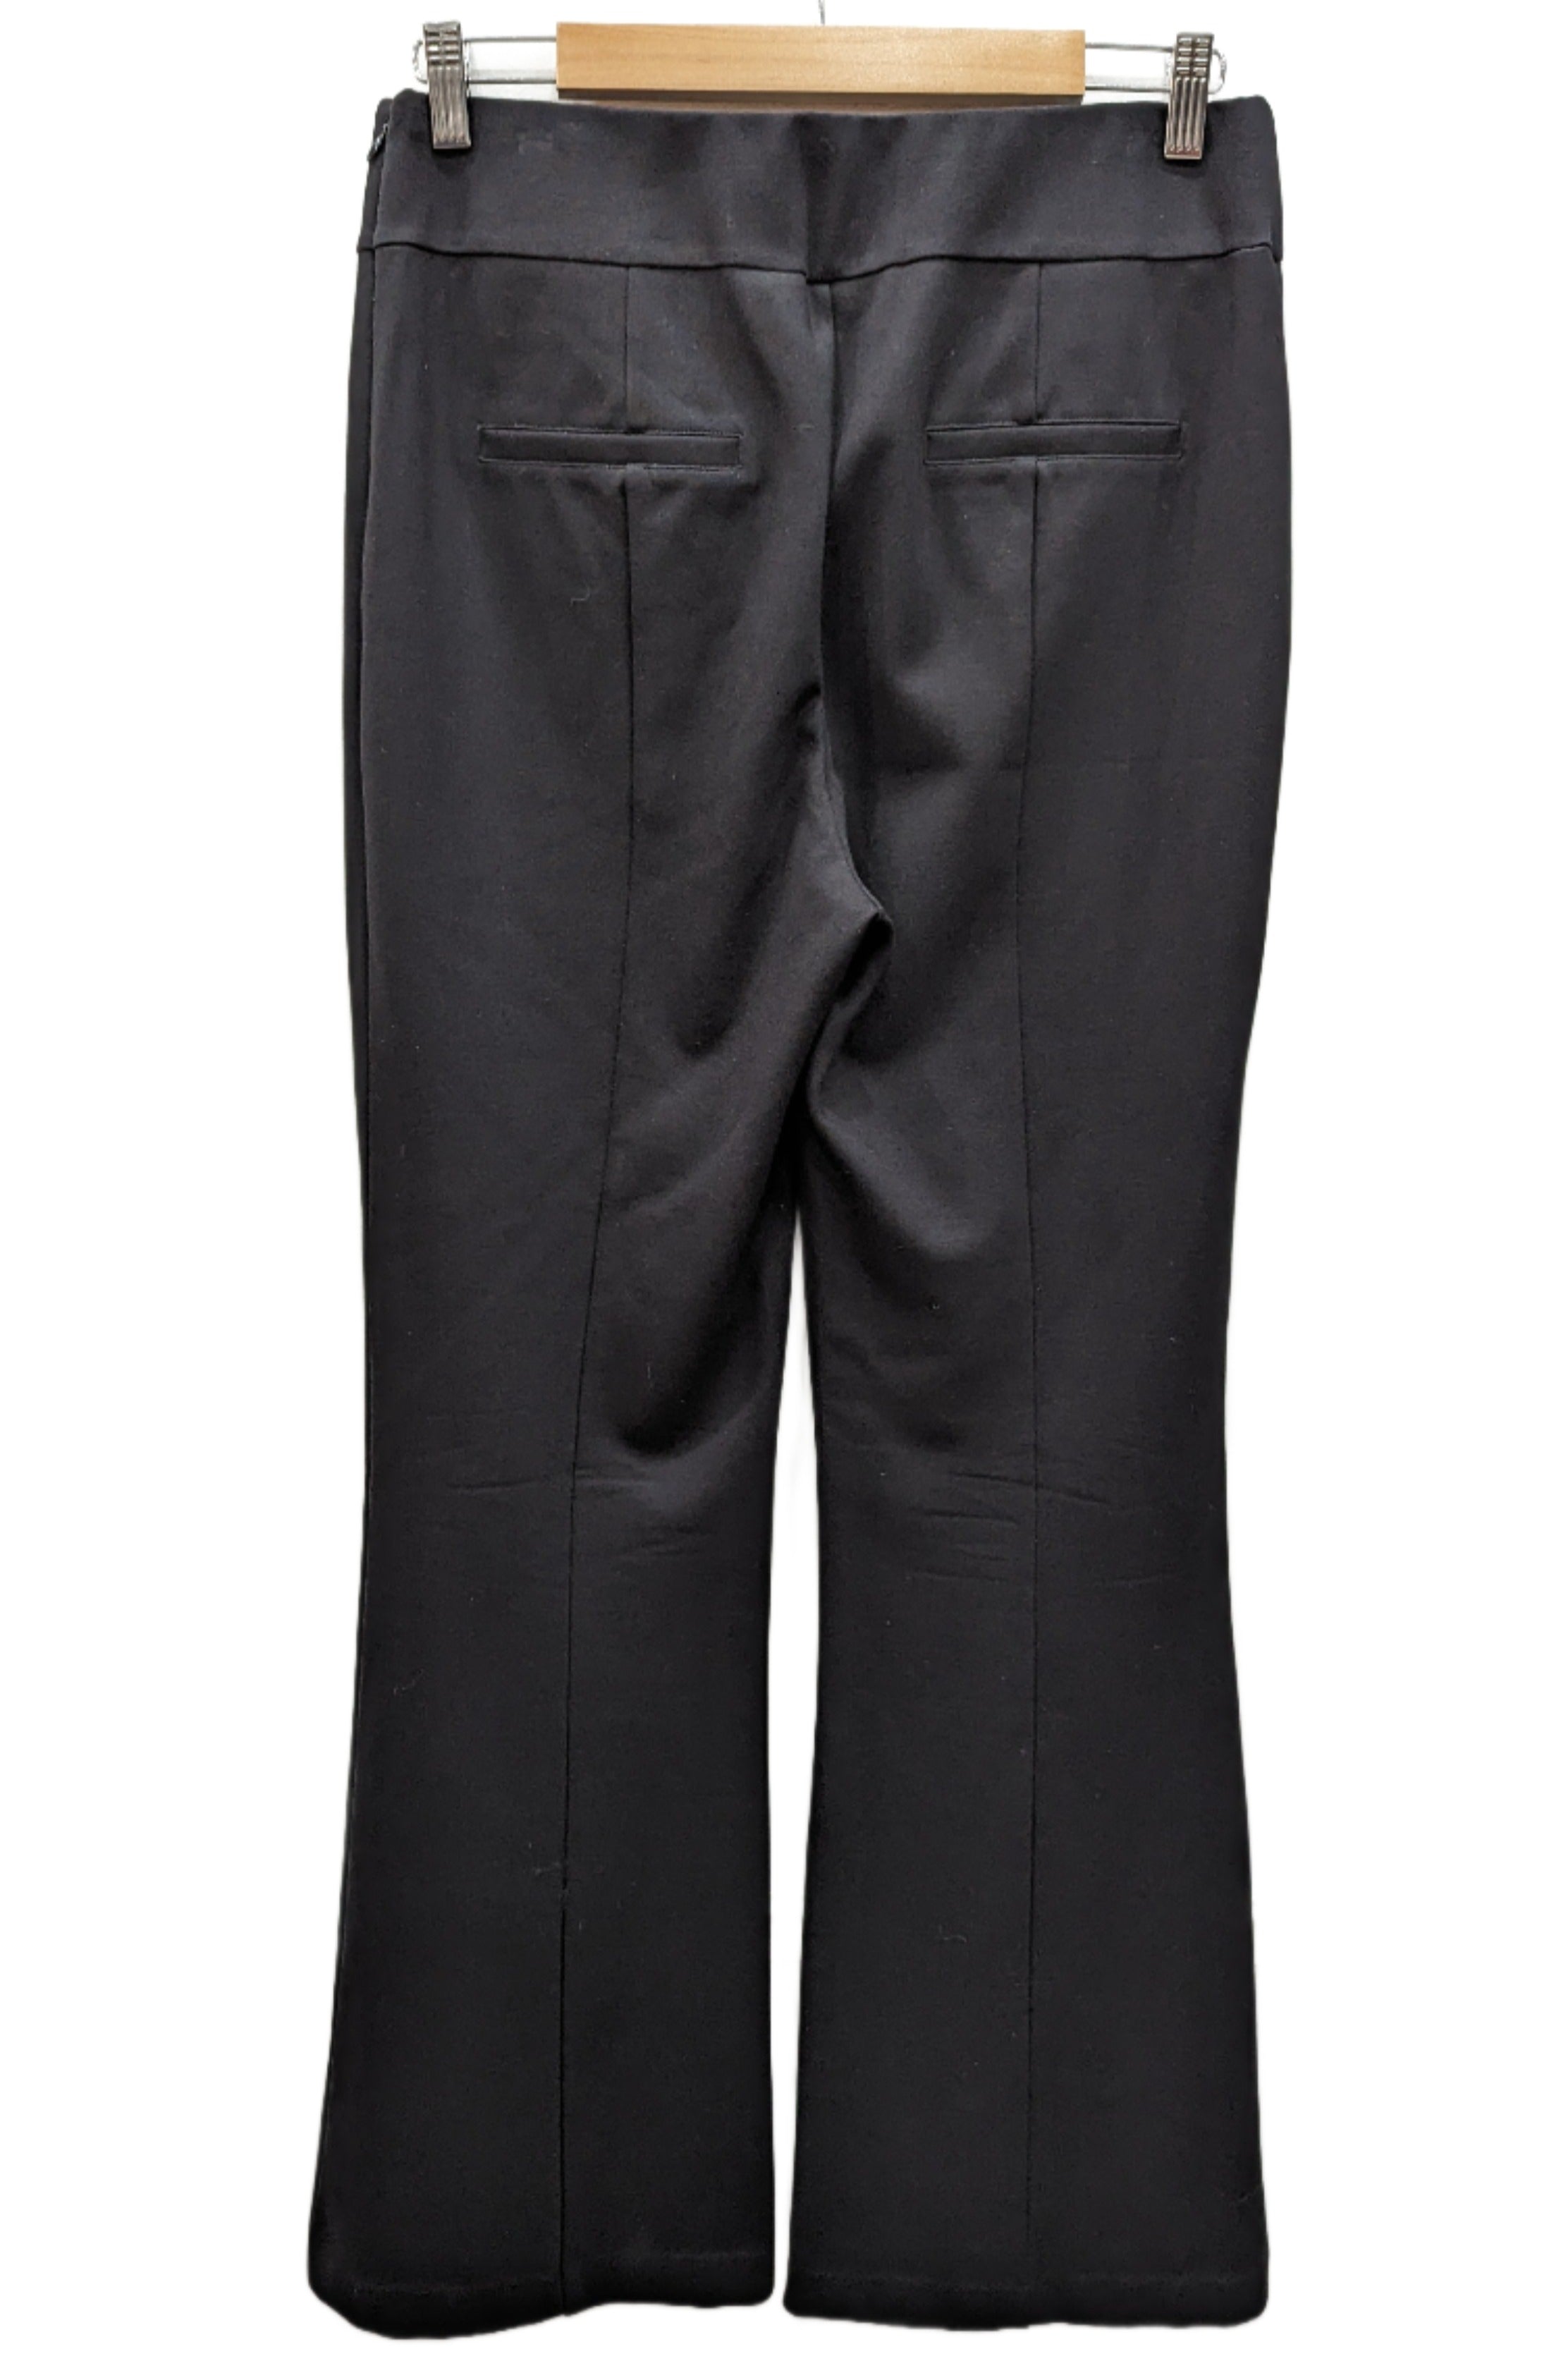 Veronika Maine Black Pants